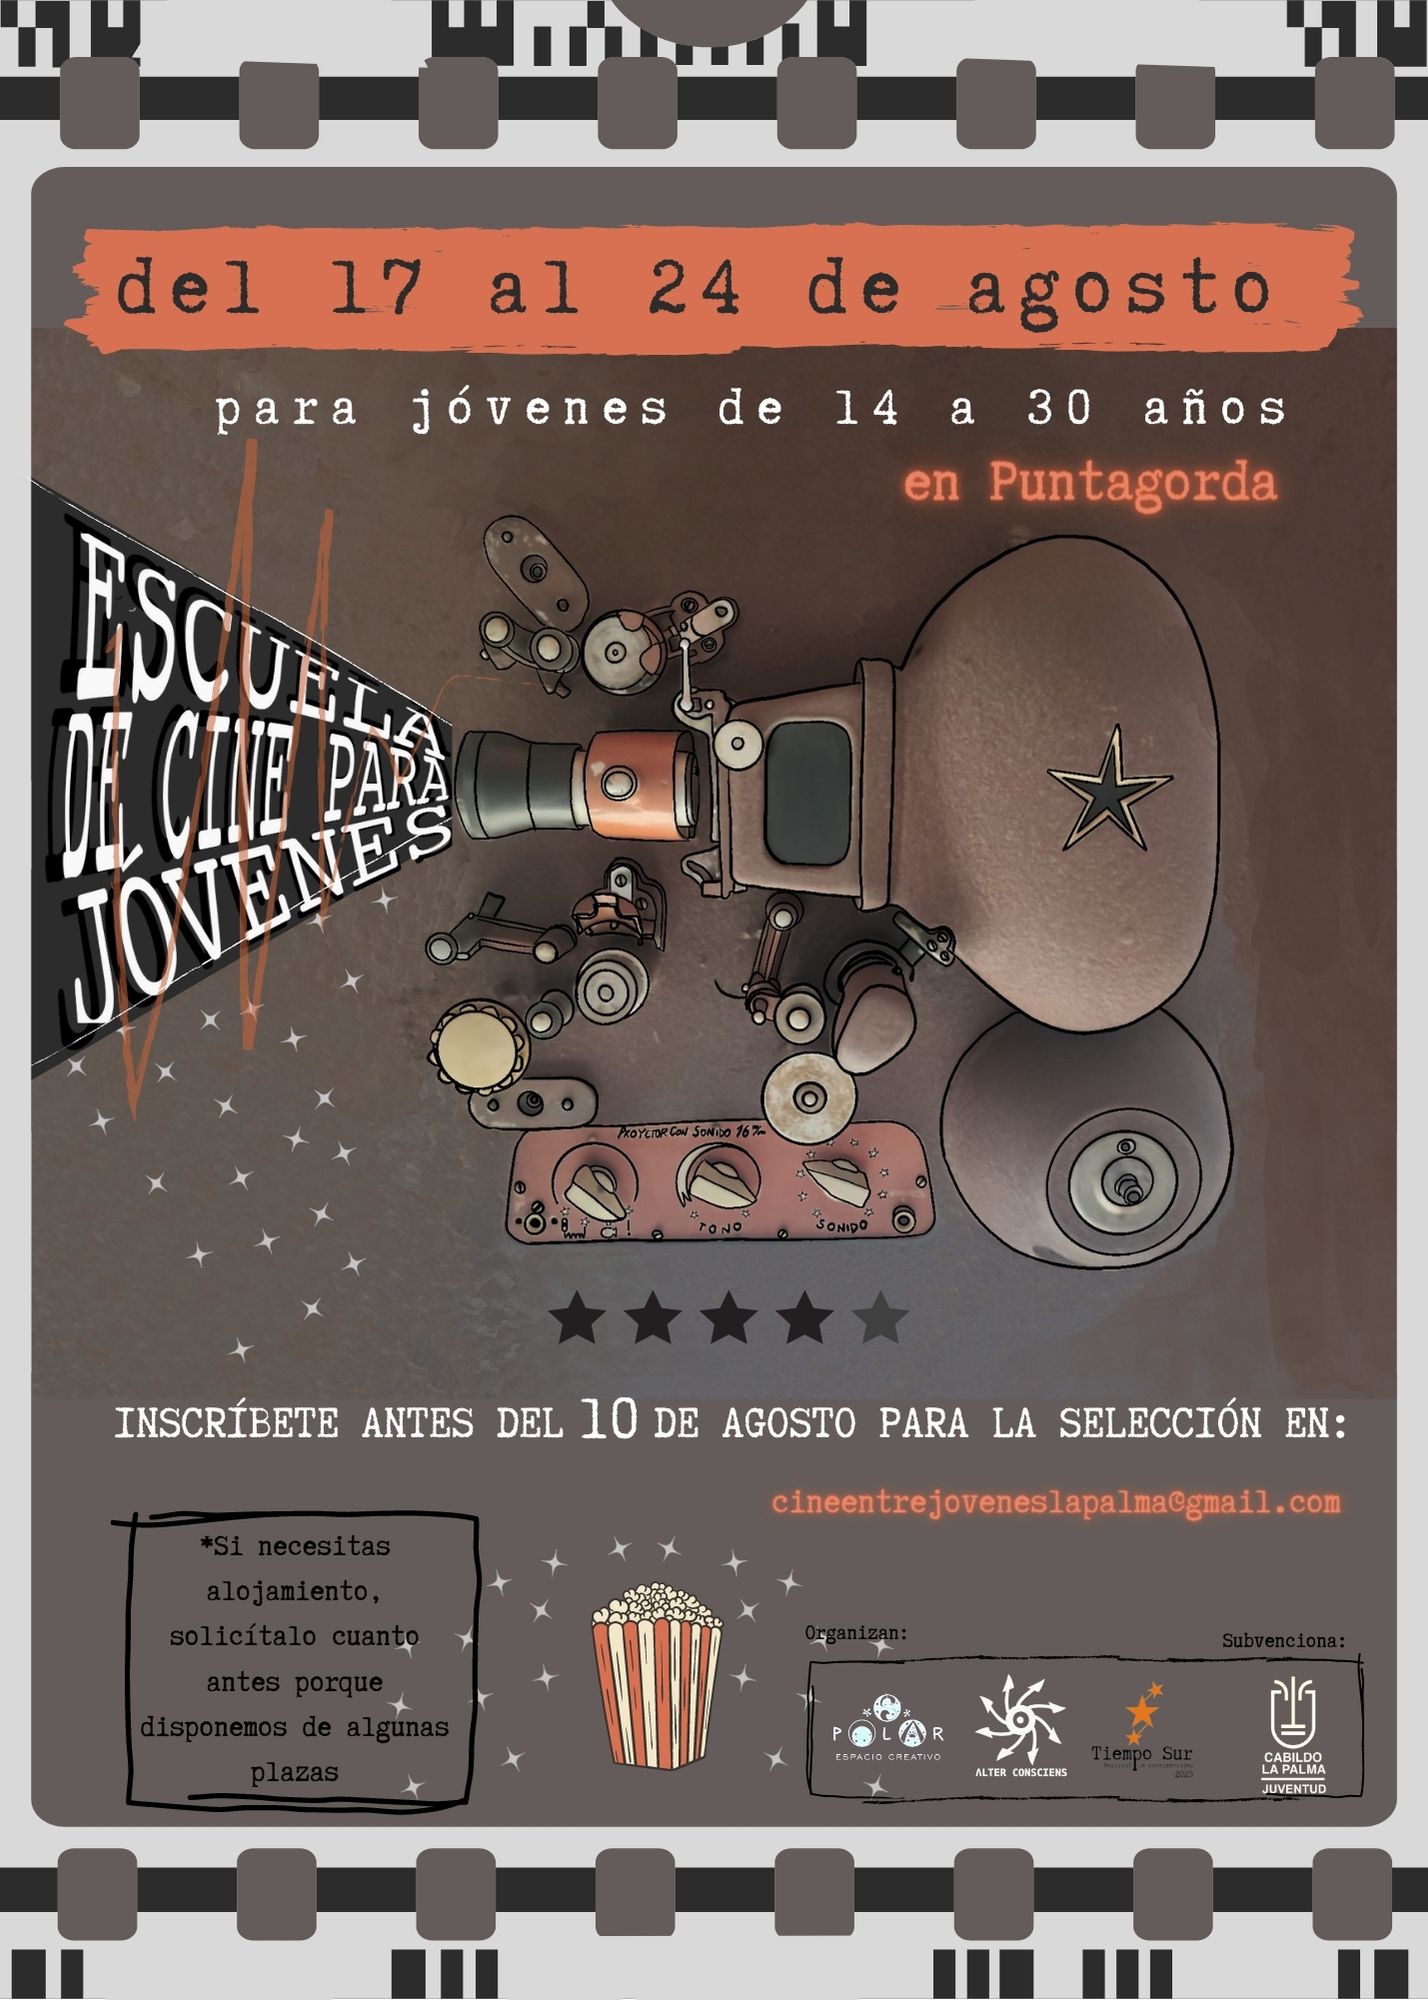 Escuela de cine para jóvenes en Puntagorda